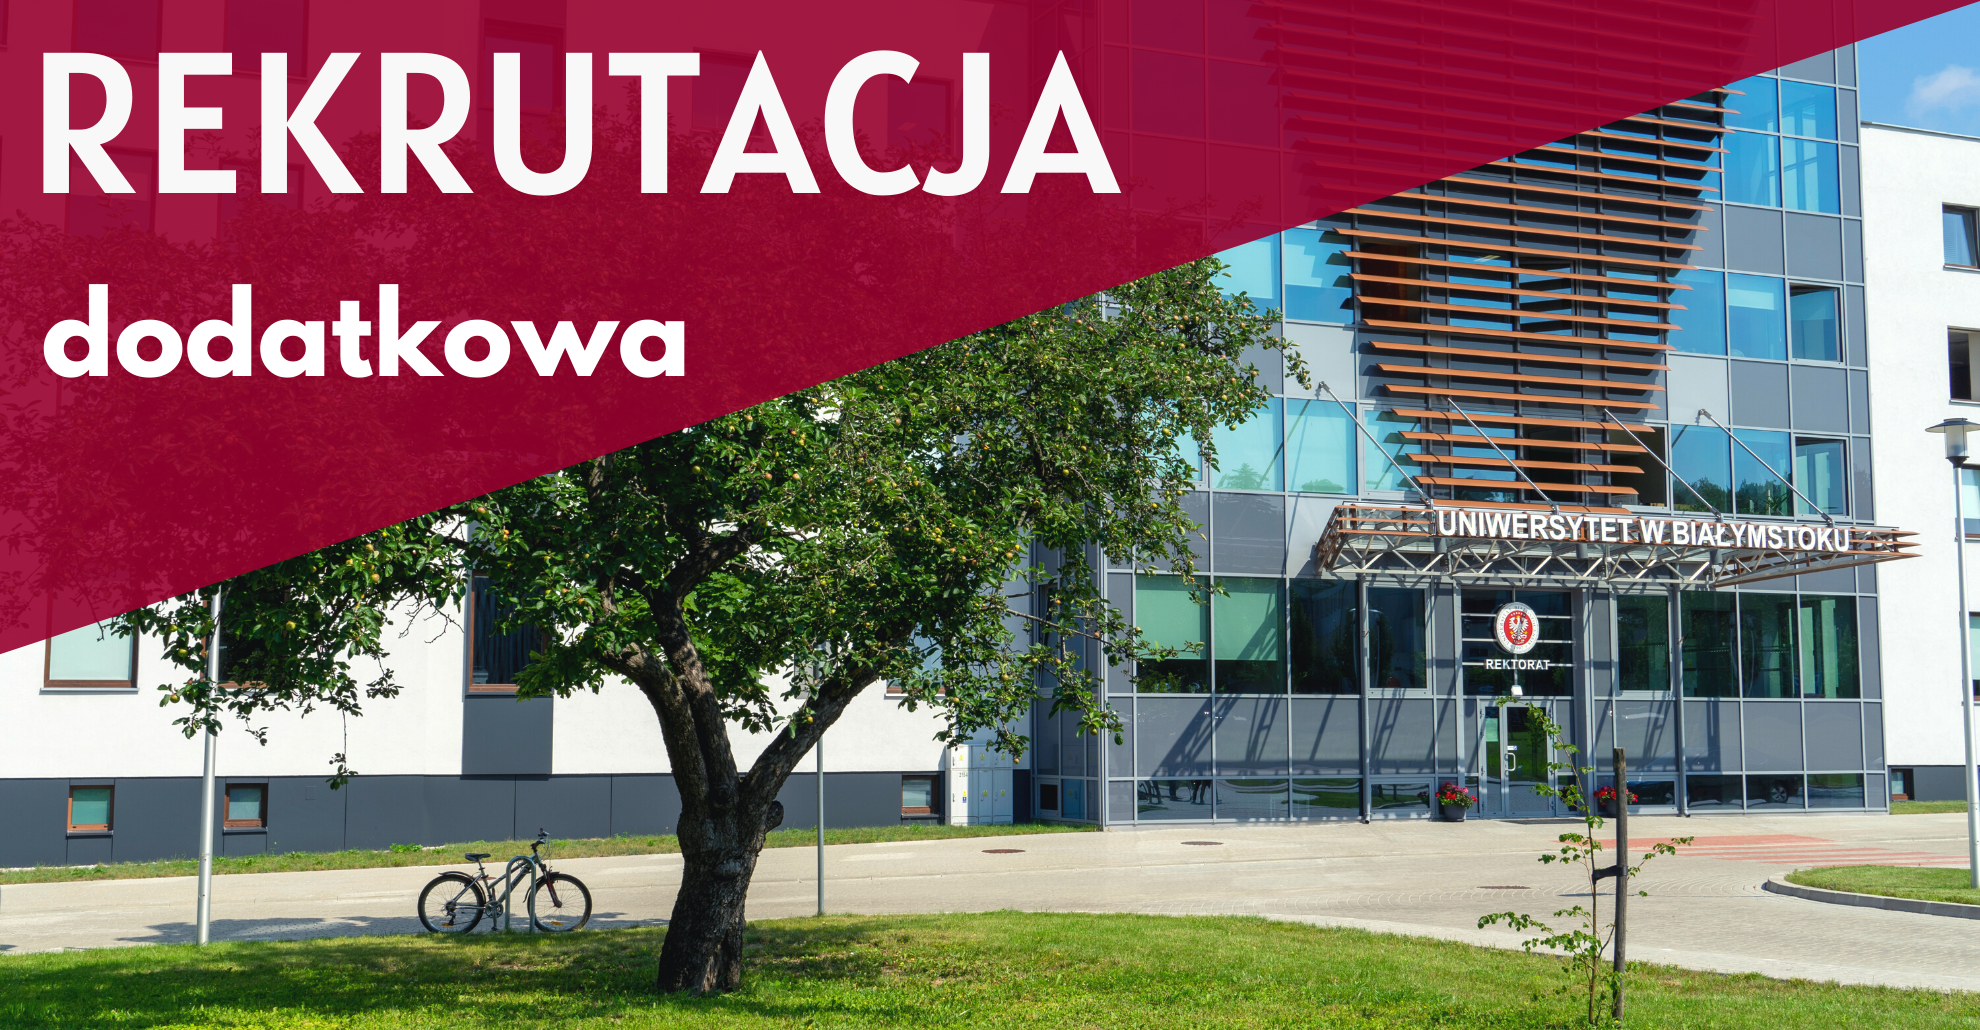 Trzy dni na studia. Uniwersytet w Białymstoku przeprowadzi rekrutację dodatkową na wybrane kierunki